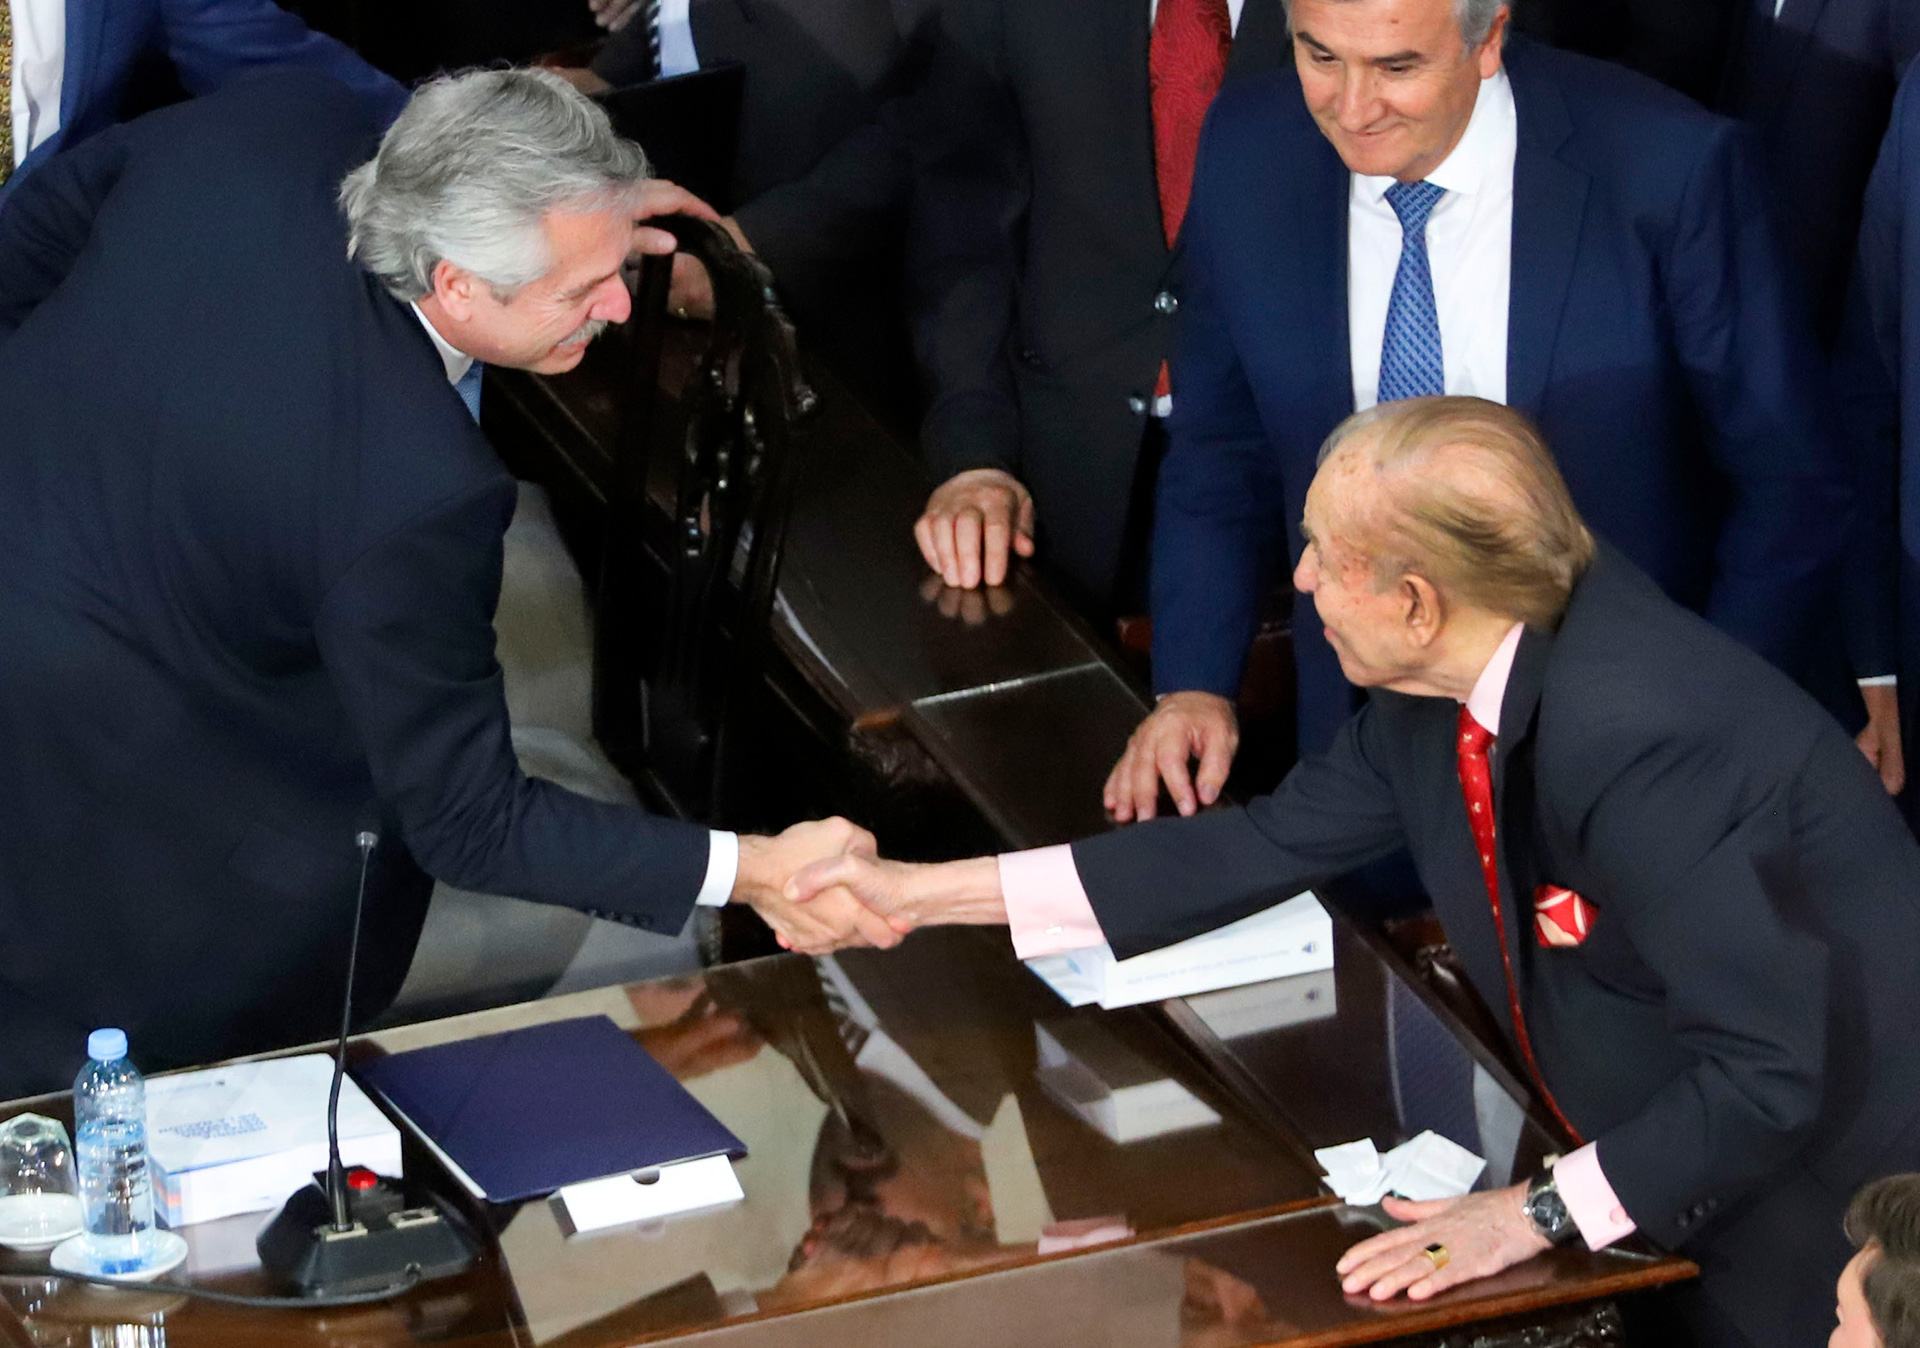 El ex presidente Carlos Menem saluda al presidente Alberto Fernandez durante la Asamblea Legislativa, en una de sus ultimas apariciones publicas.